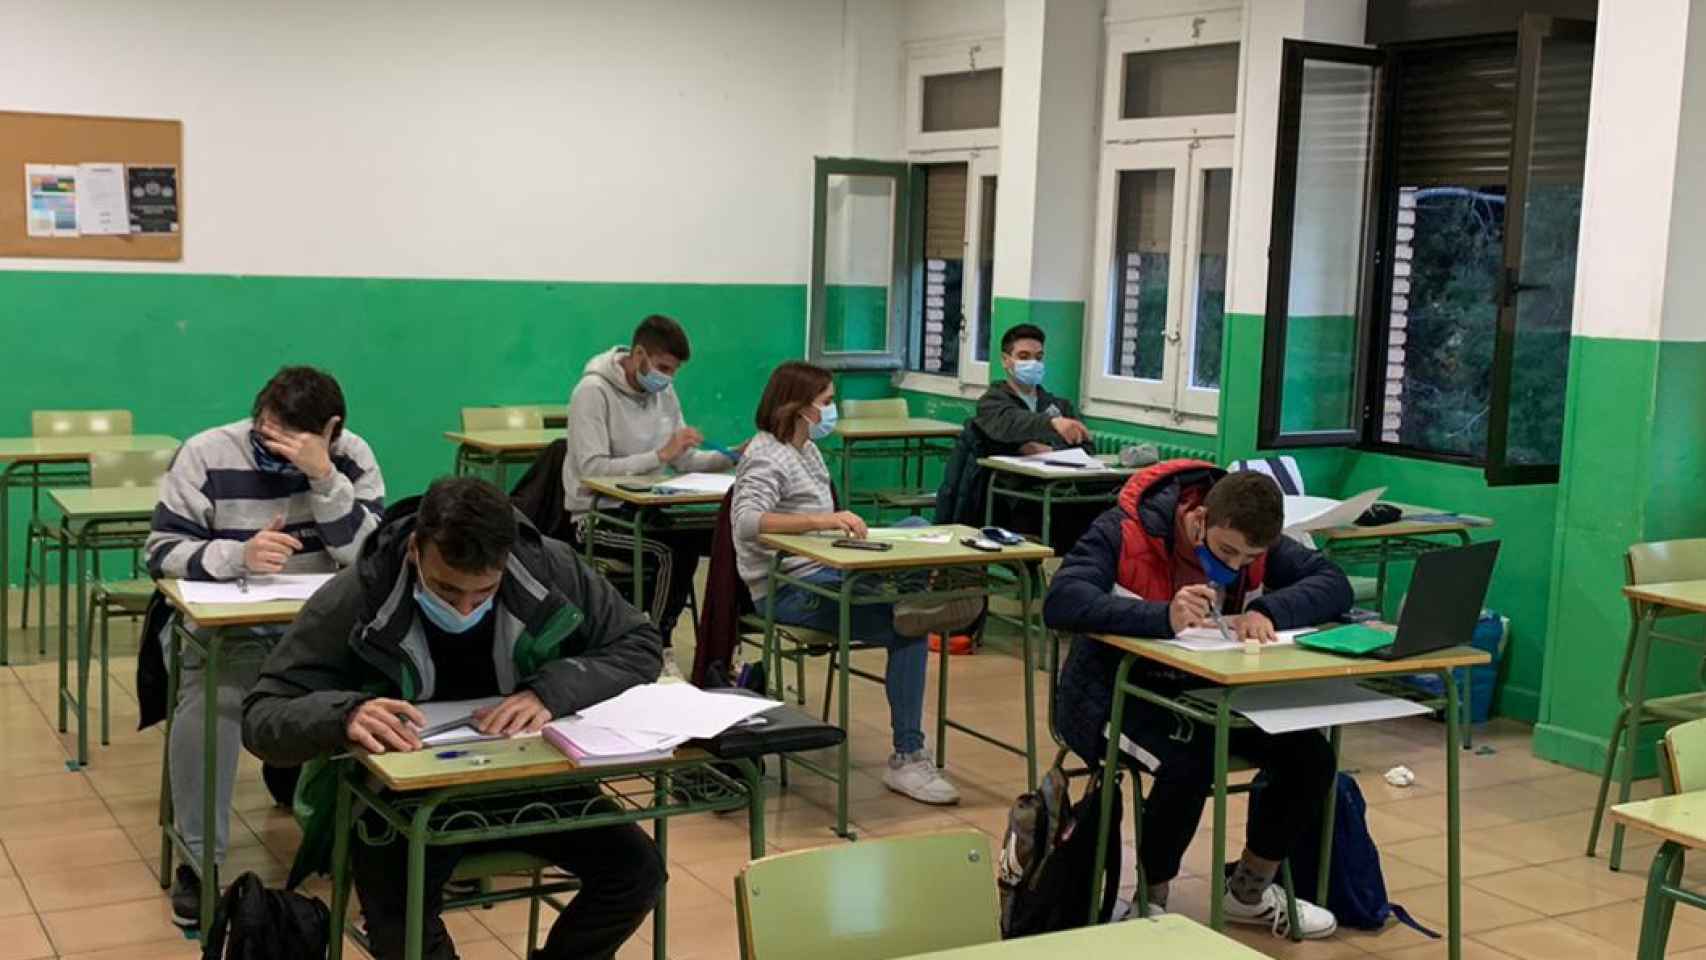 Varios alumnos dan clase, con las ventanas abiertas, en un instituto de Zaragoza.